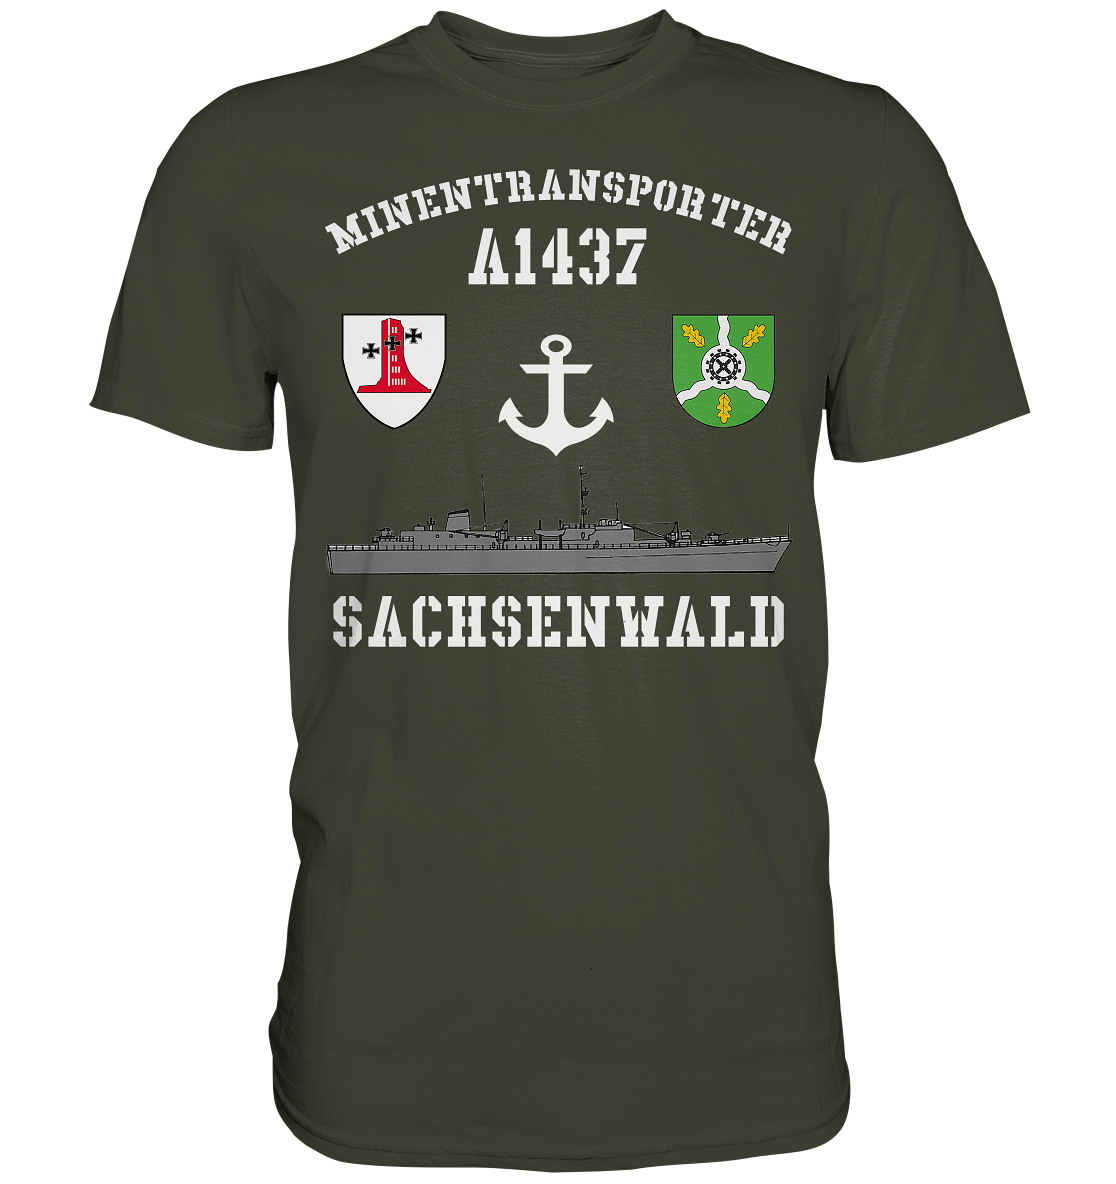 Minentransporter A1437 SACHSENWALD - Premium Shirt